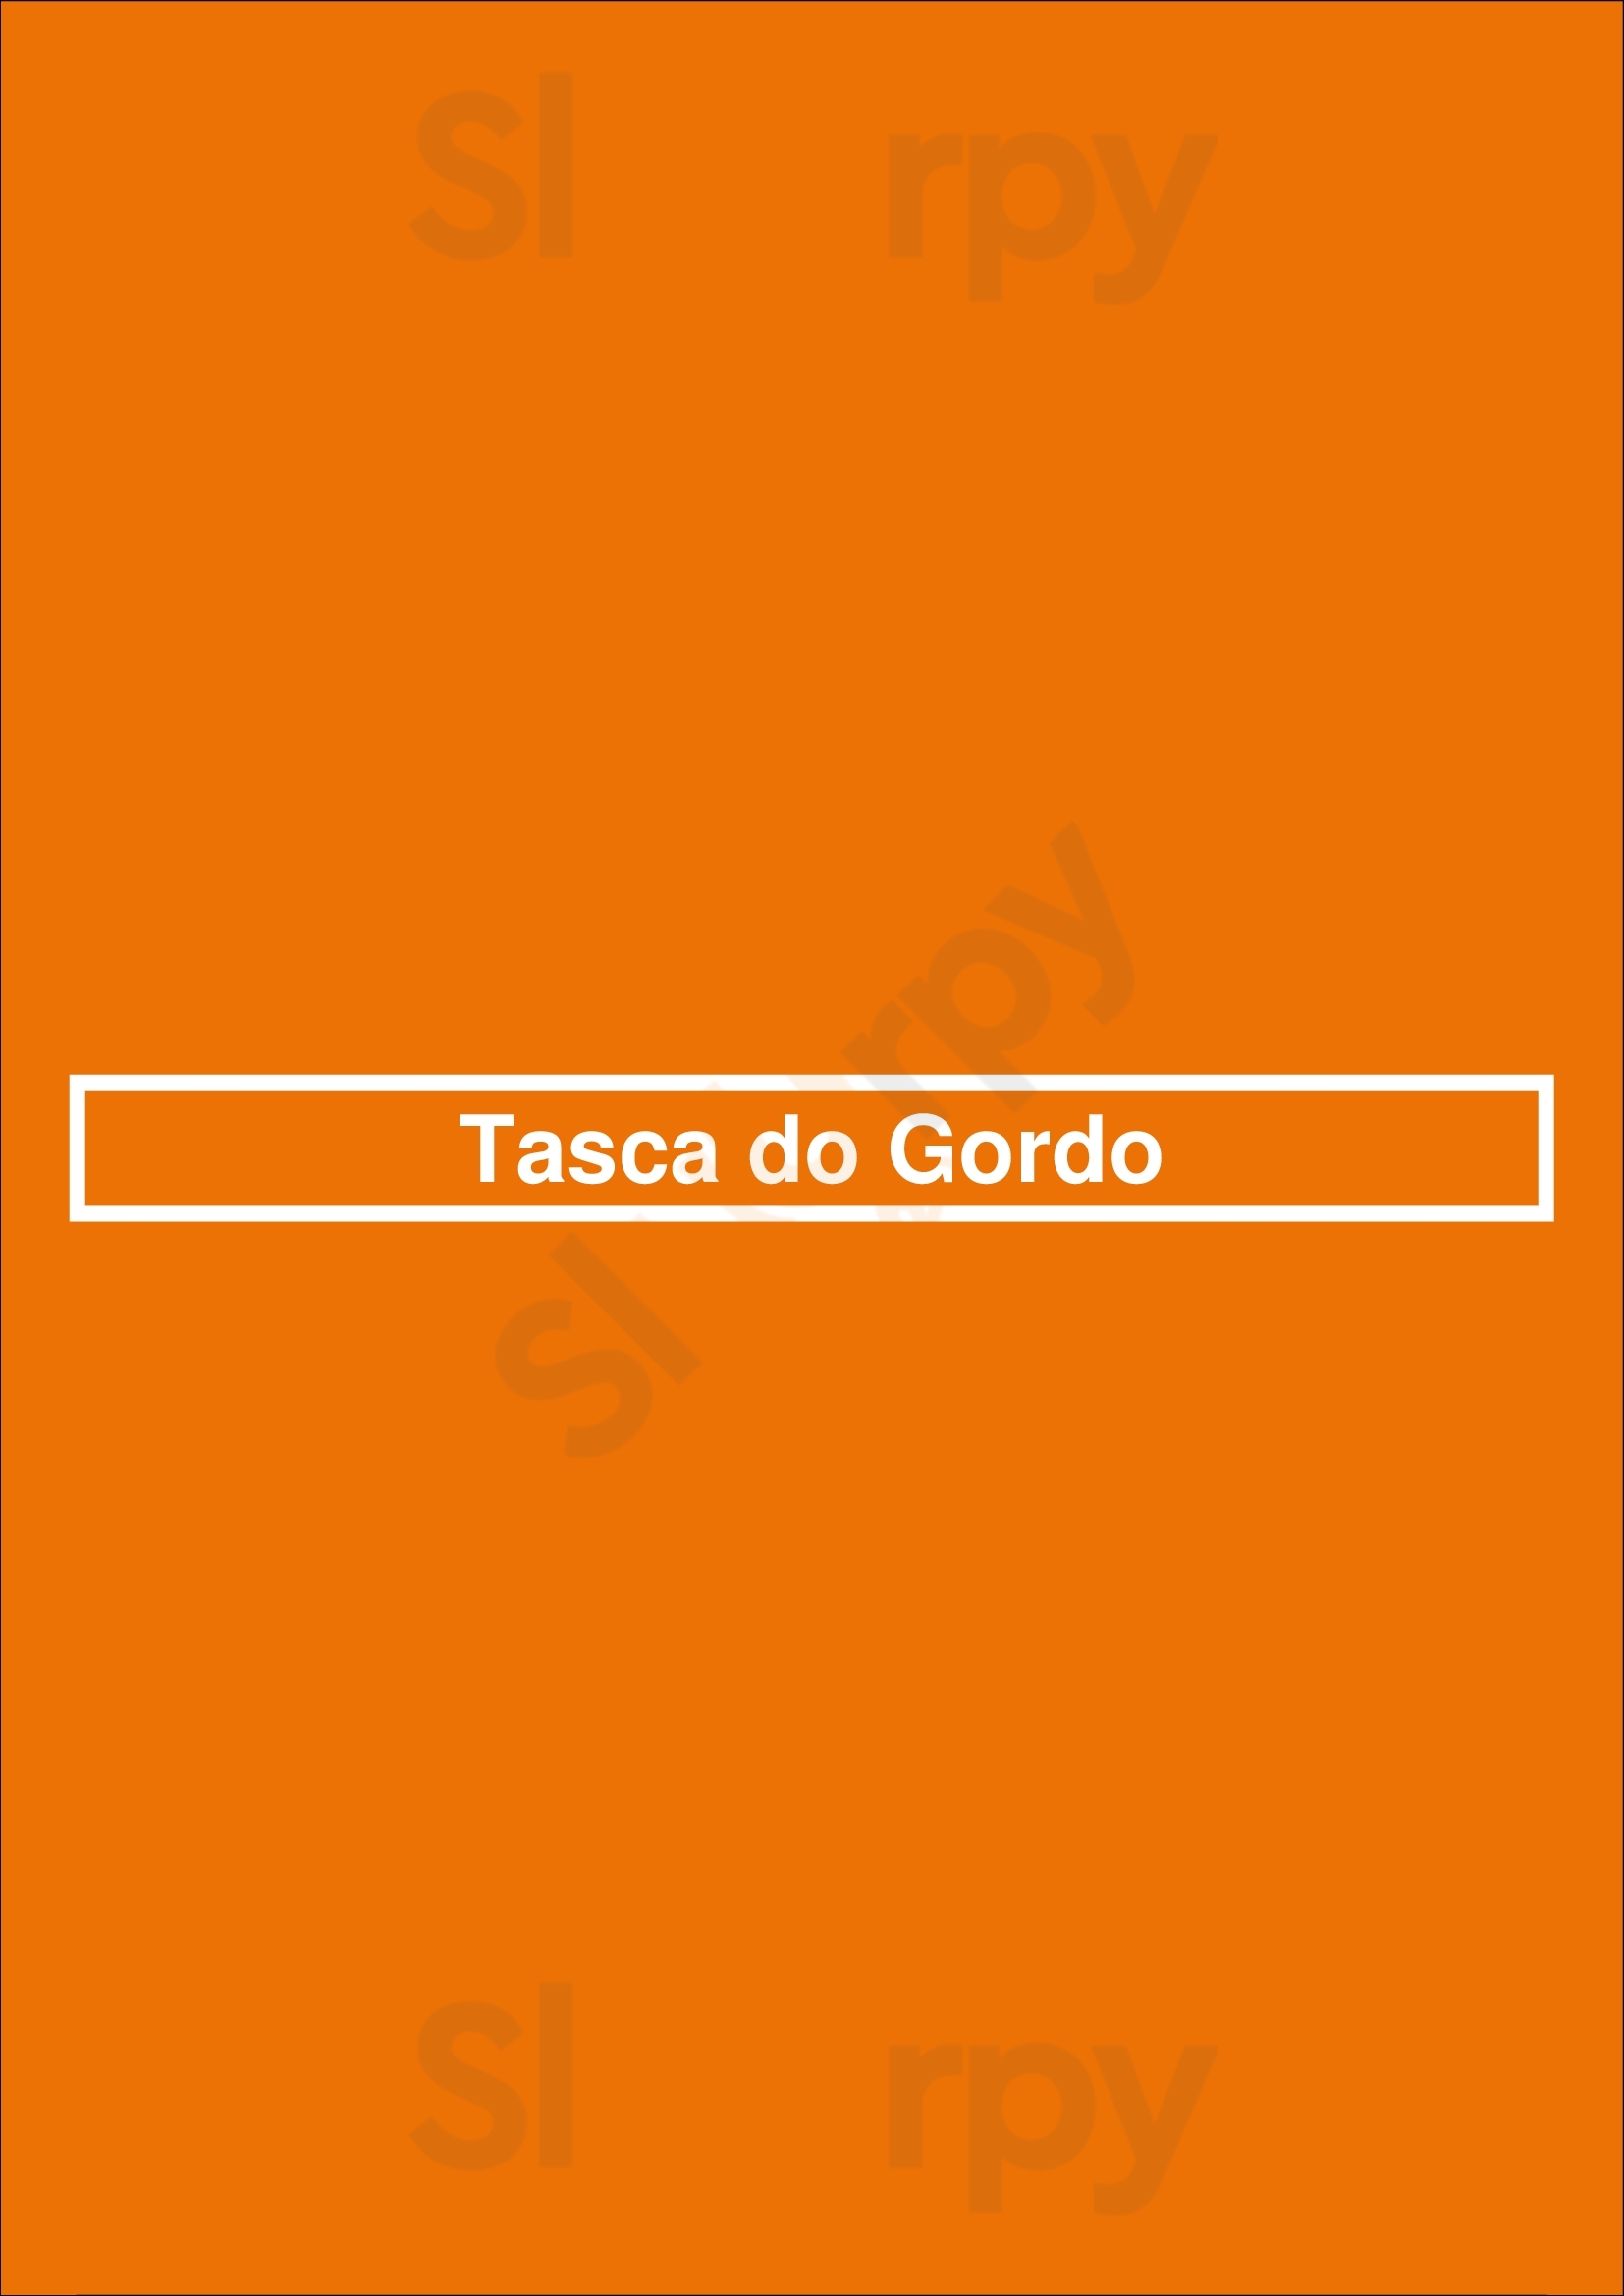 Tasca Do Gordo Lisboa Menu - 1